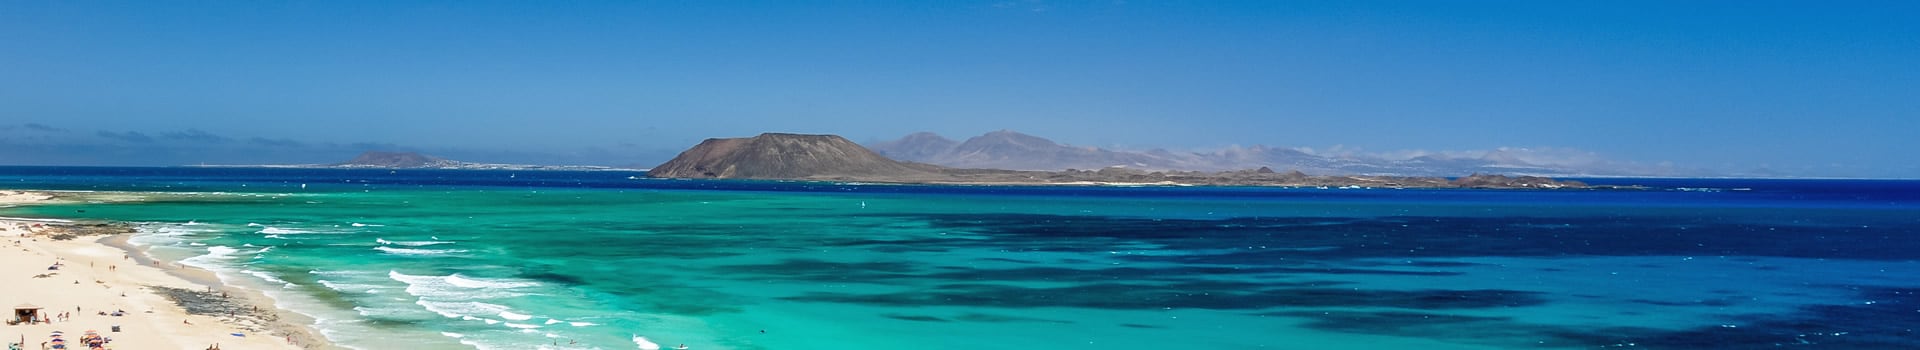 Biglietti da Nave da Cadice a Fuerteventura